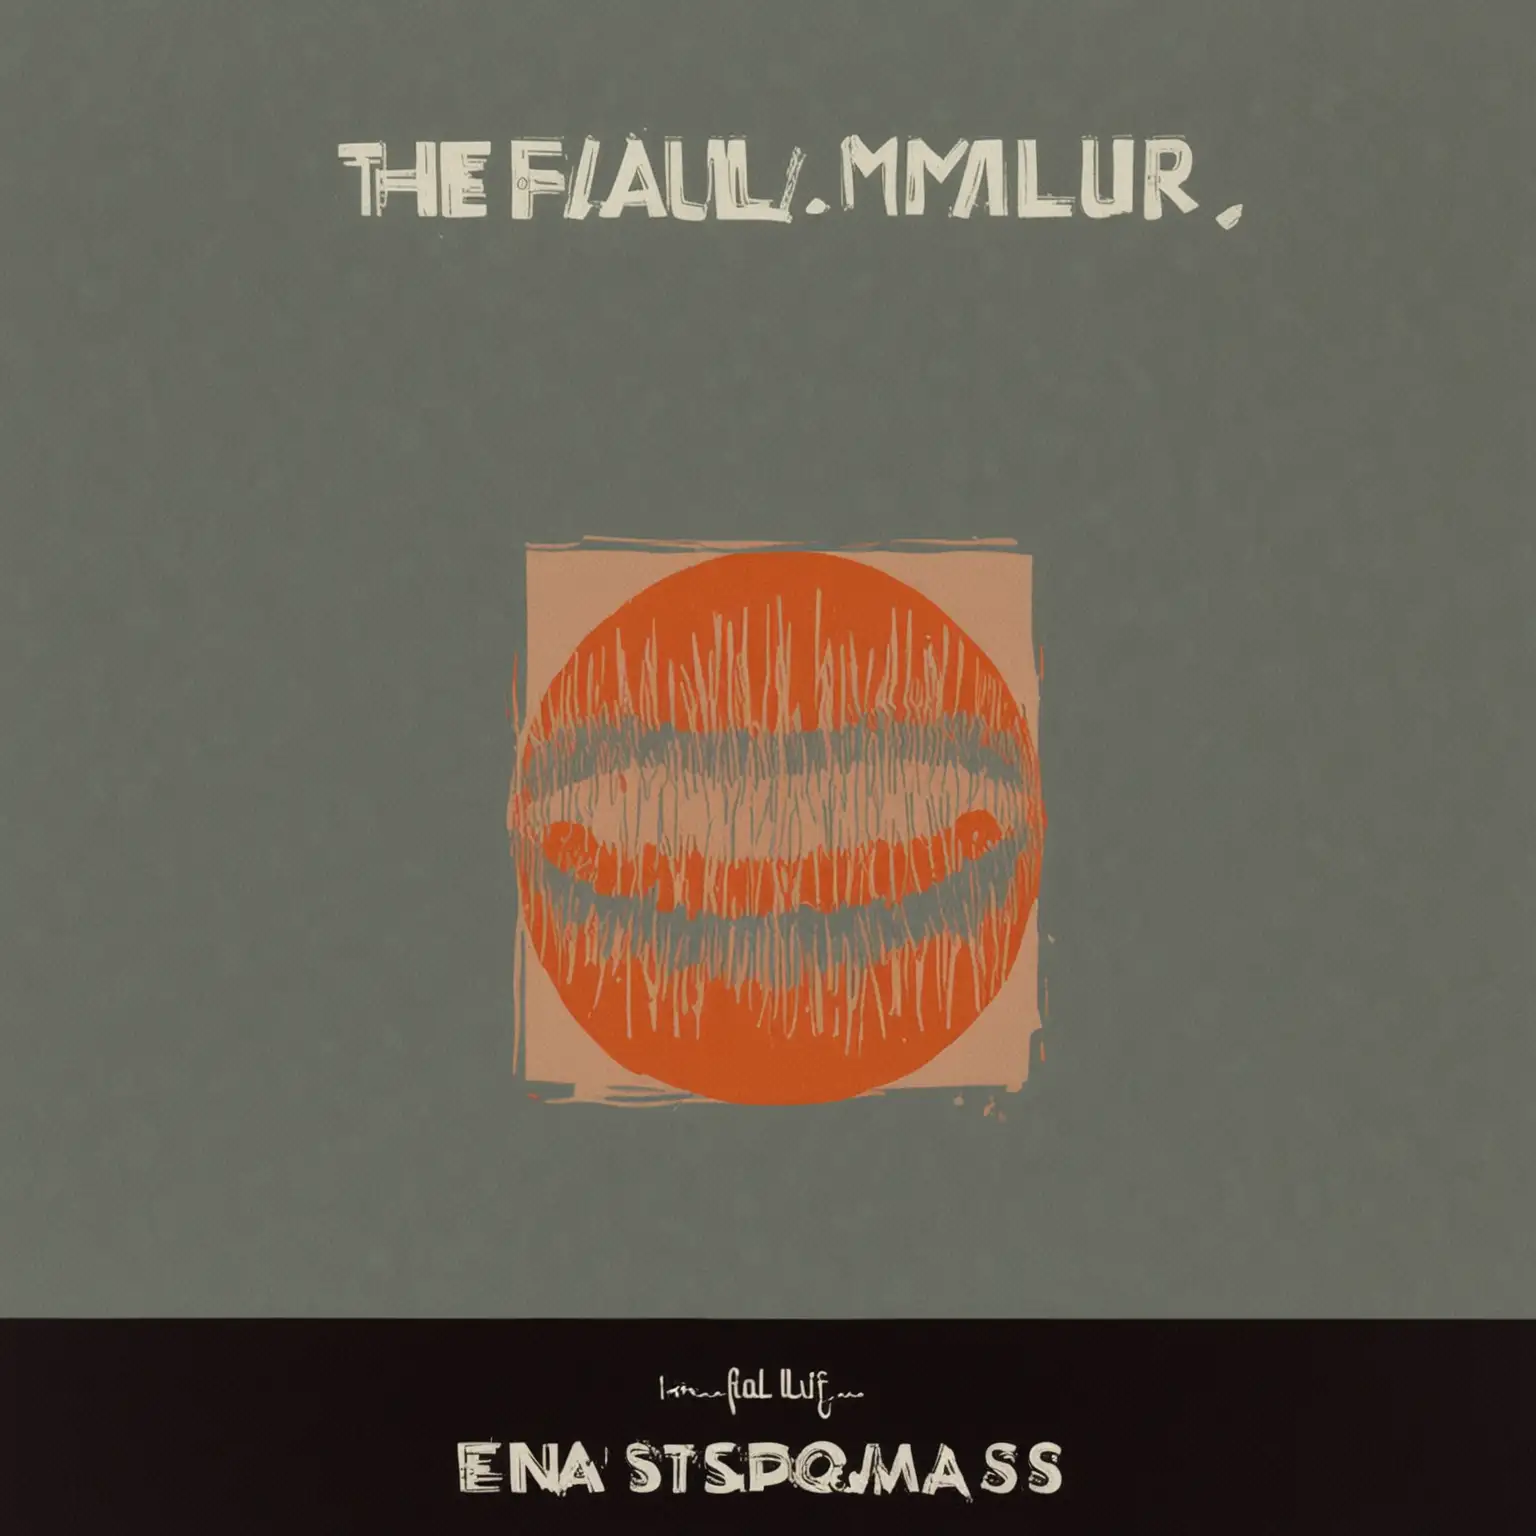 Genera la portada de un single titulado 'The failure', en relación al fracaso de una relación amorosa, con el estilo de Saul Bass